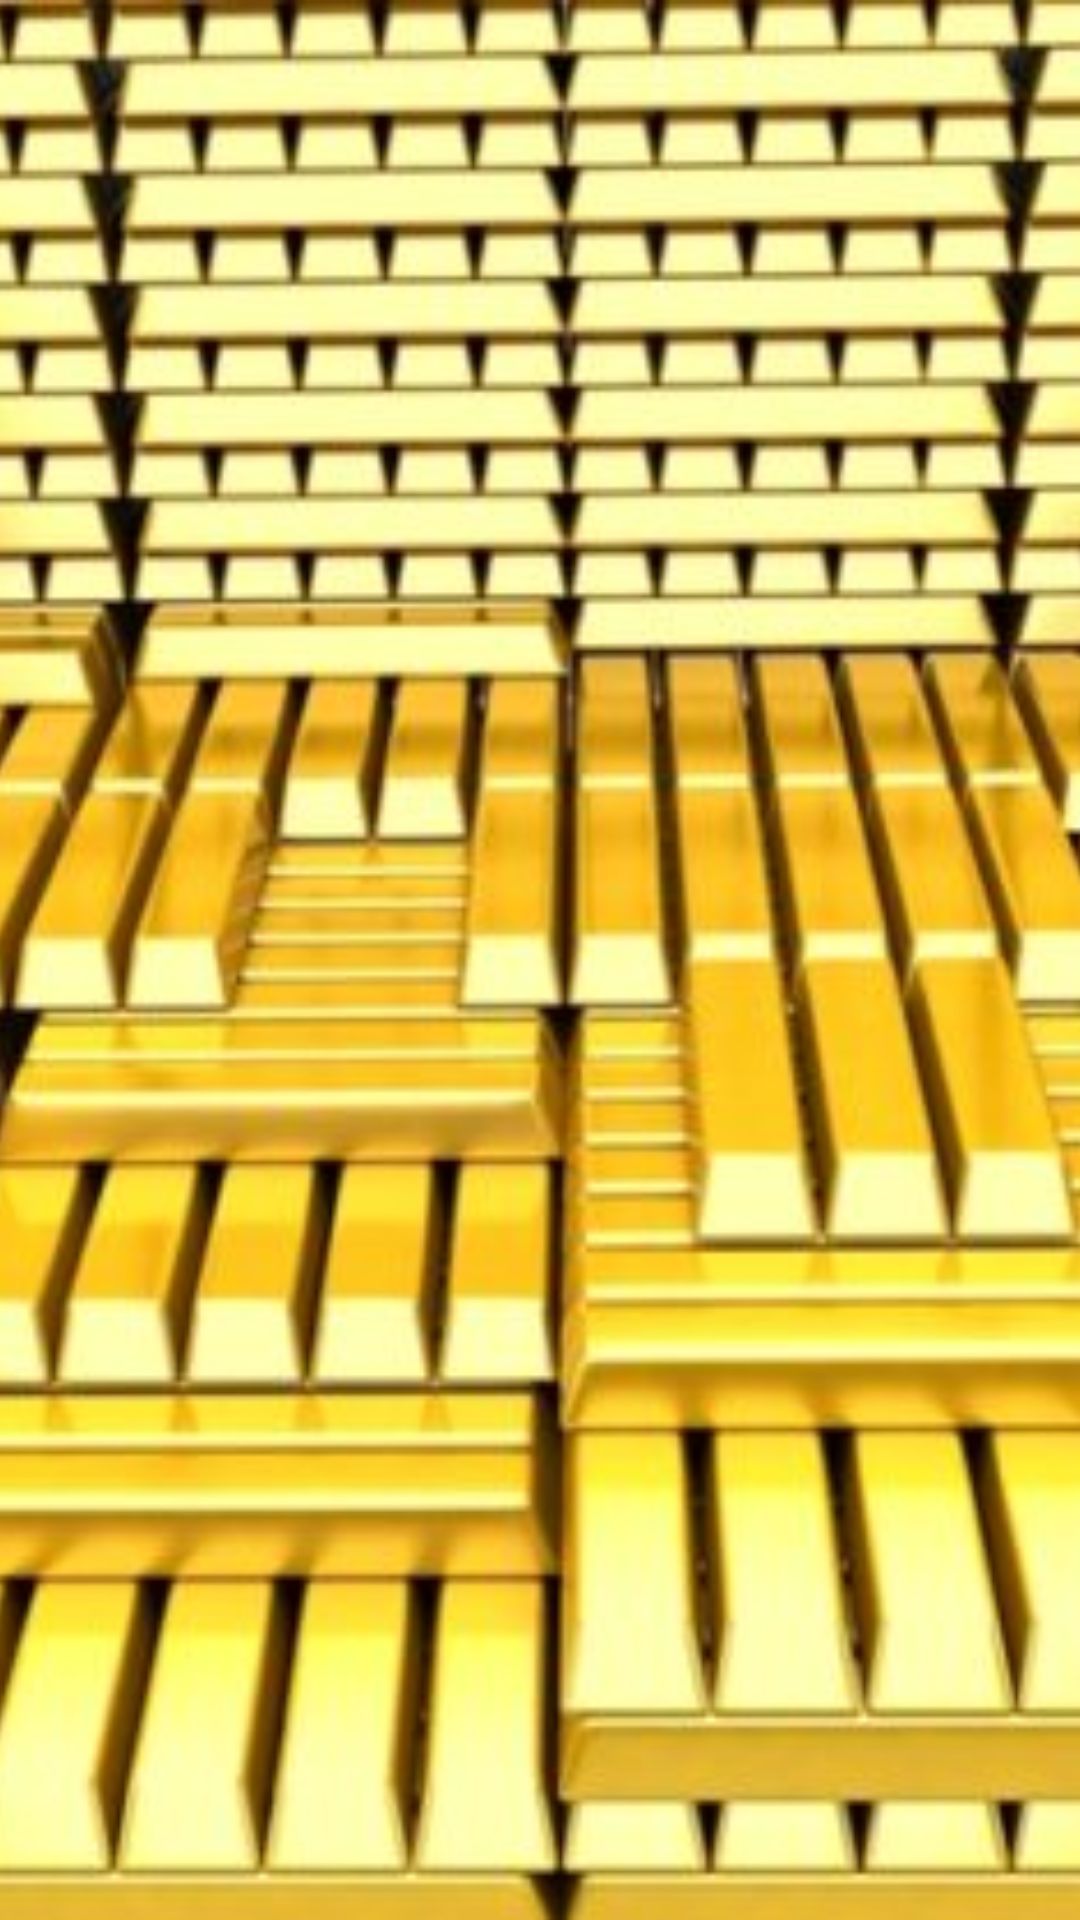 दुनिया में किस देश के पास है सबसे अधिक सोना, भारत की रैंकिंग क्या? 